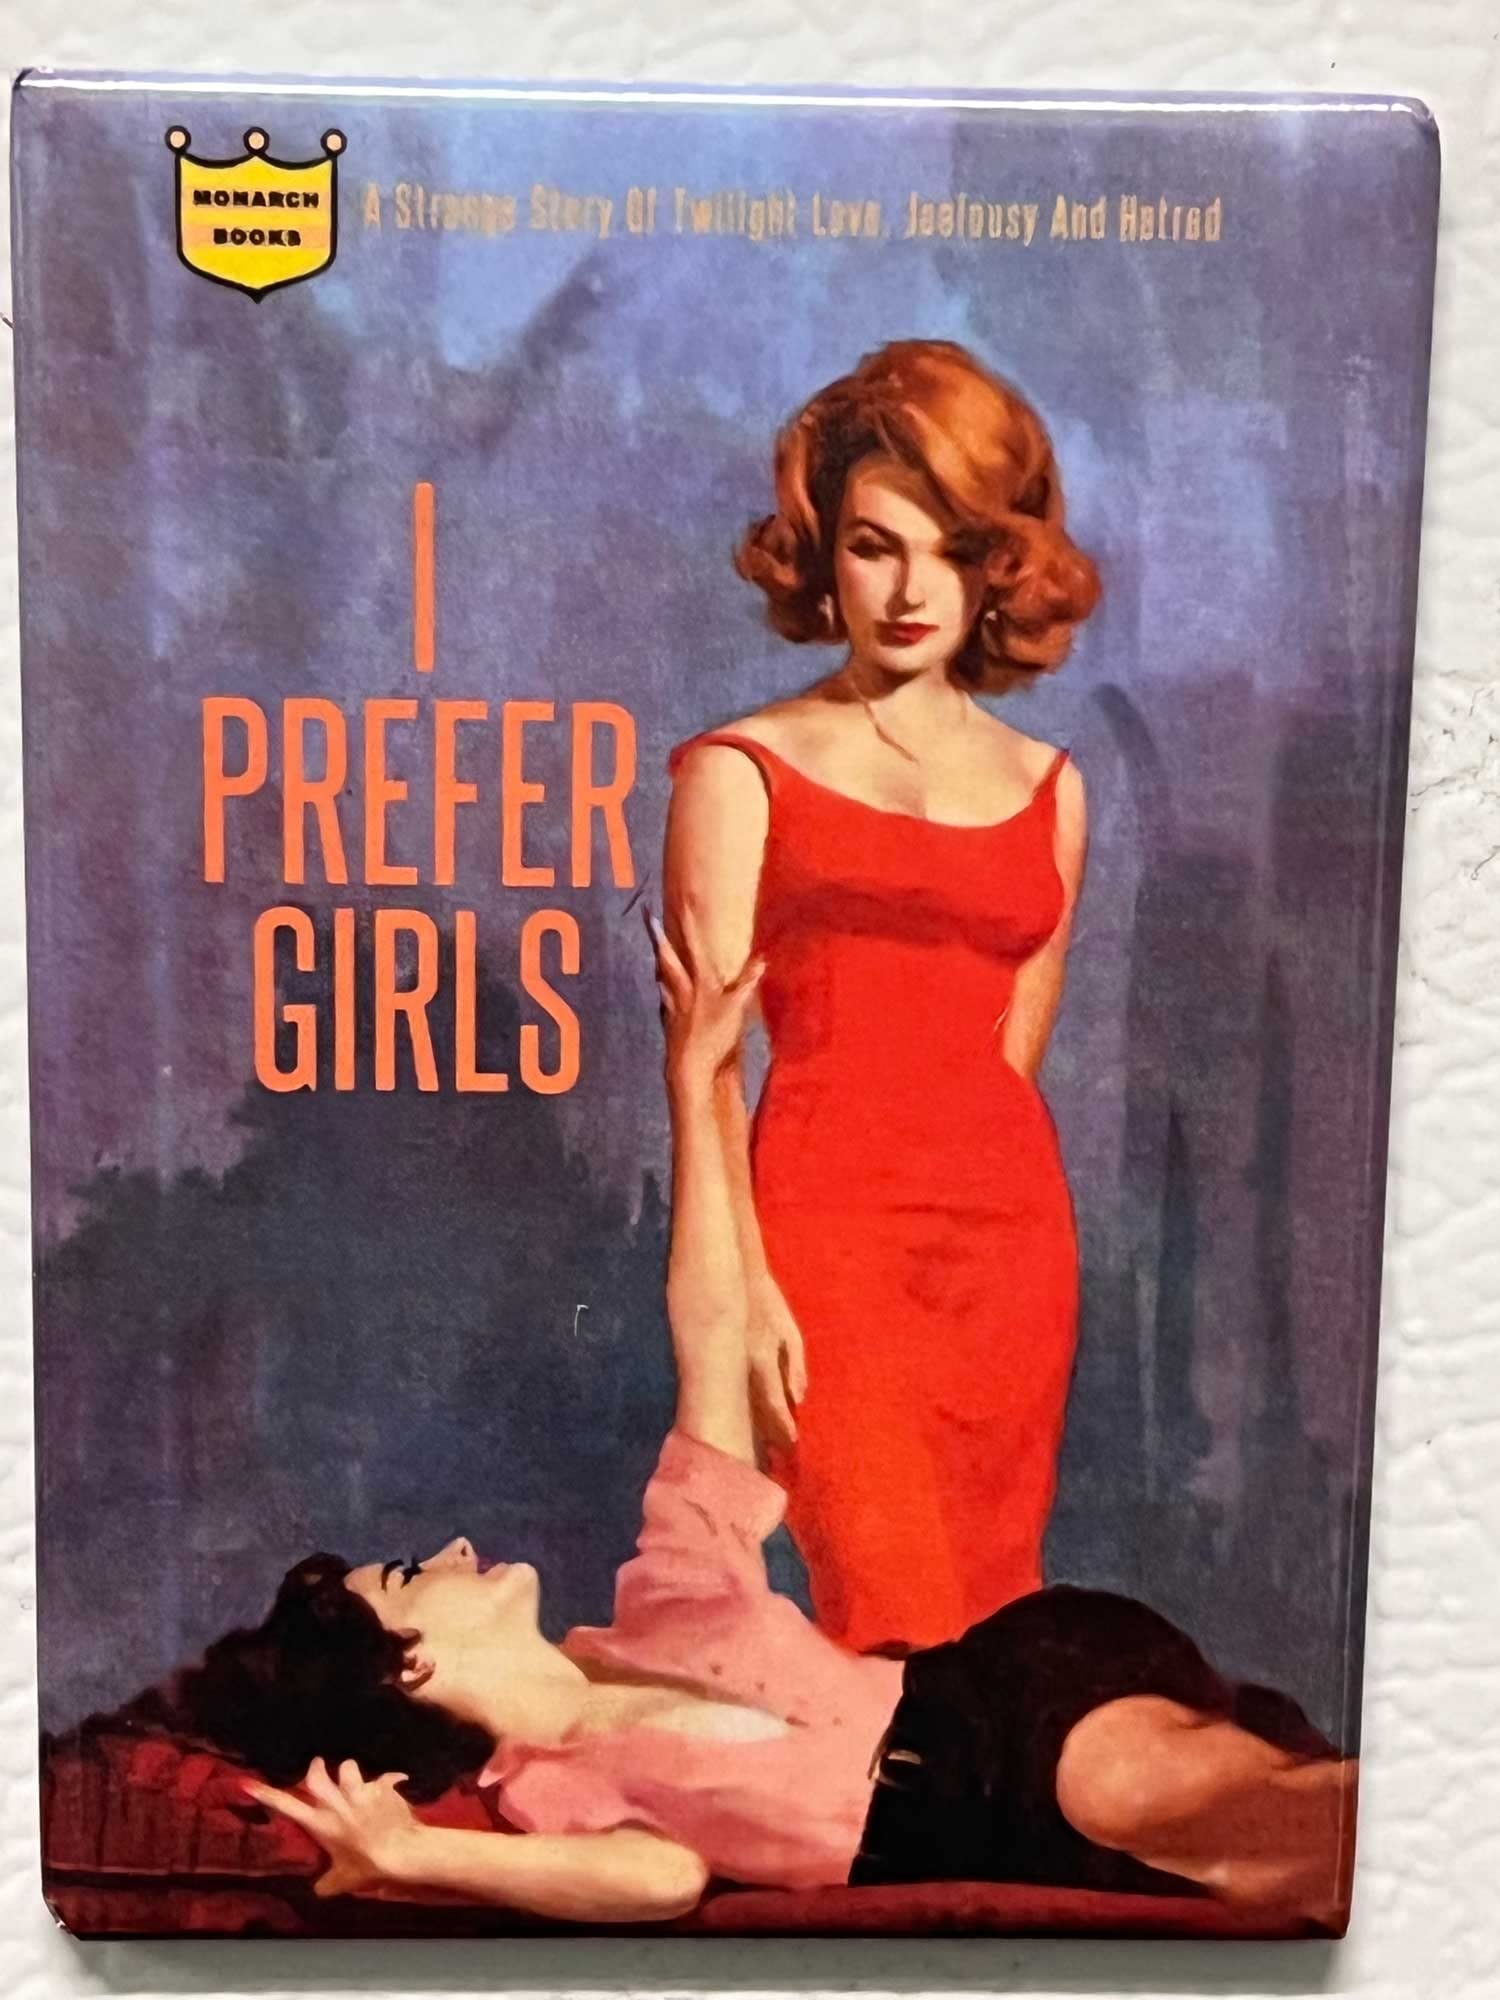 I Prefer Girls Pulp Novel Cover Fridge Magnet